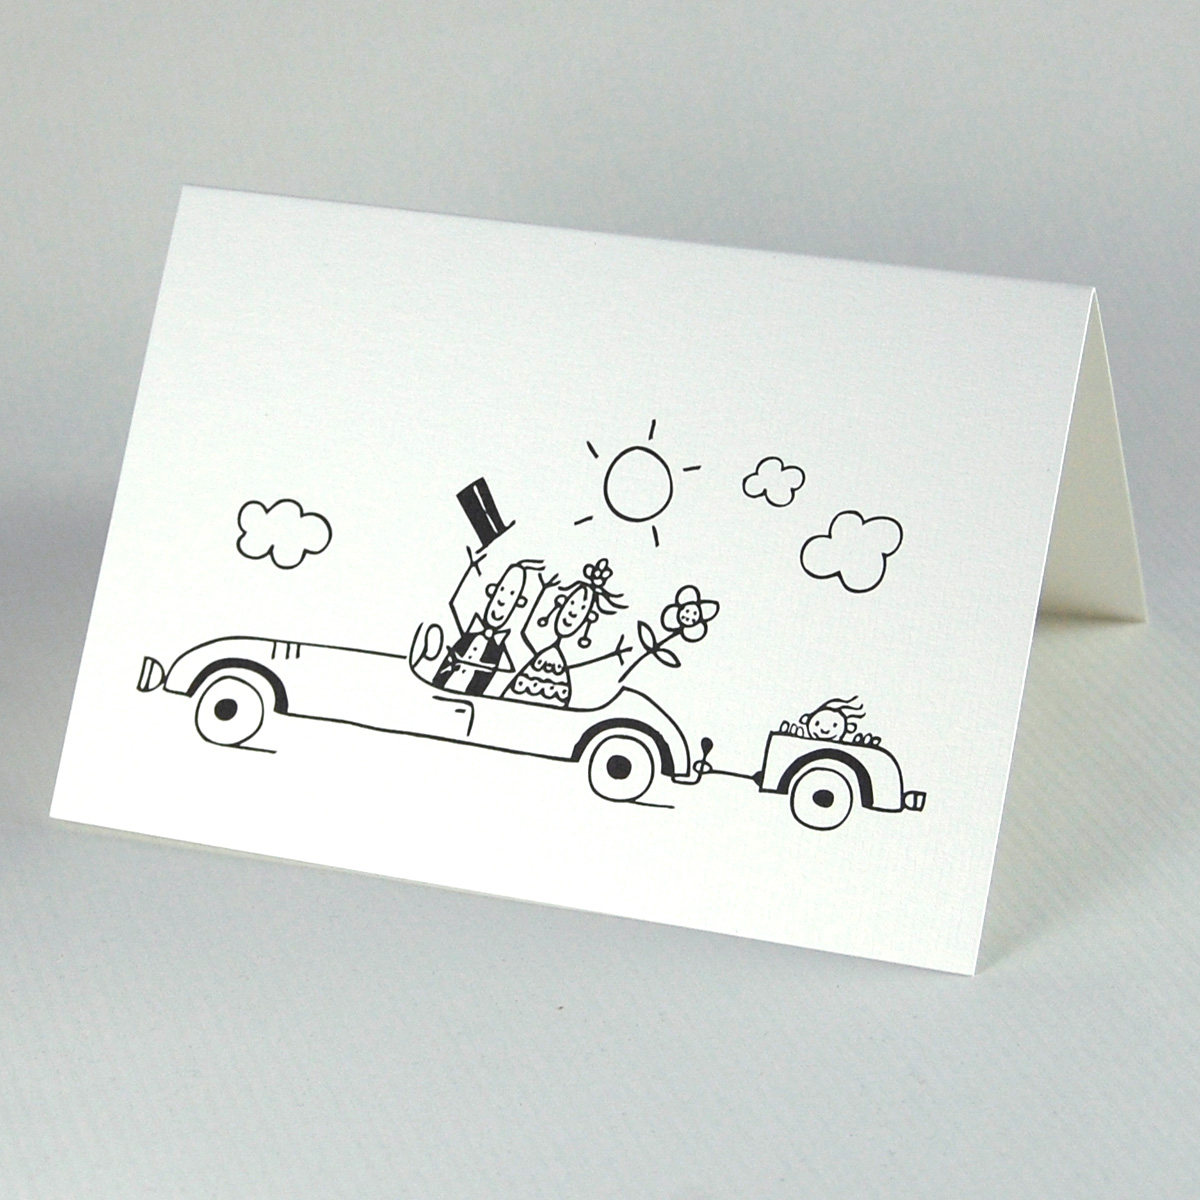 Brautpaar mit Kind im Auto, Karten für nach der Hochzeit